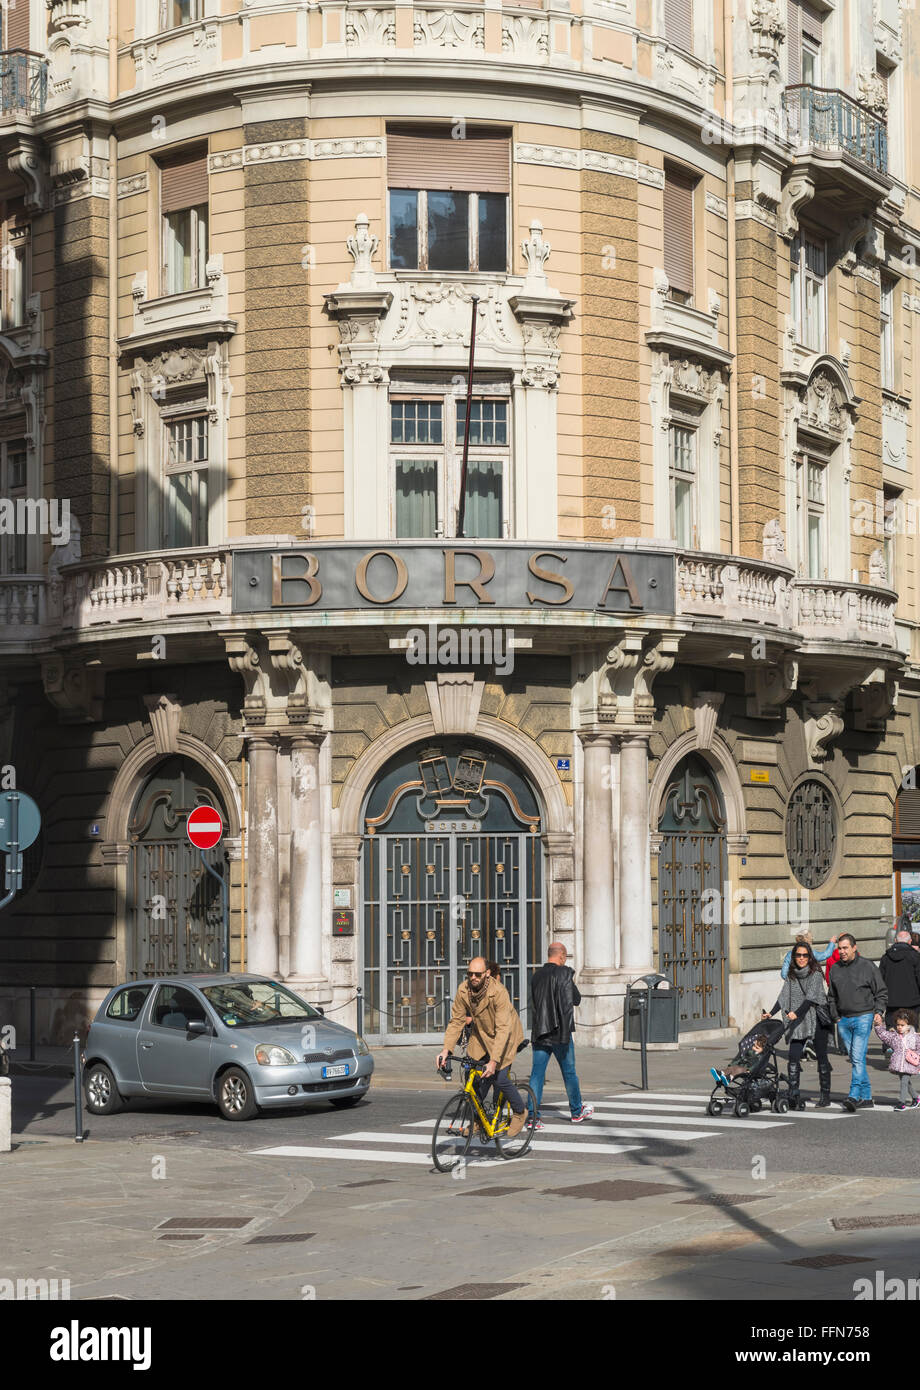 Borsa bâtiment dans la Piazza della Borsa Vecchia square, Trieste, Italie, Europe Banque D'Images